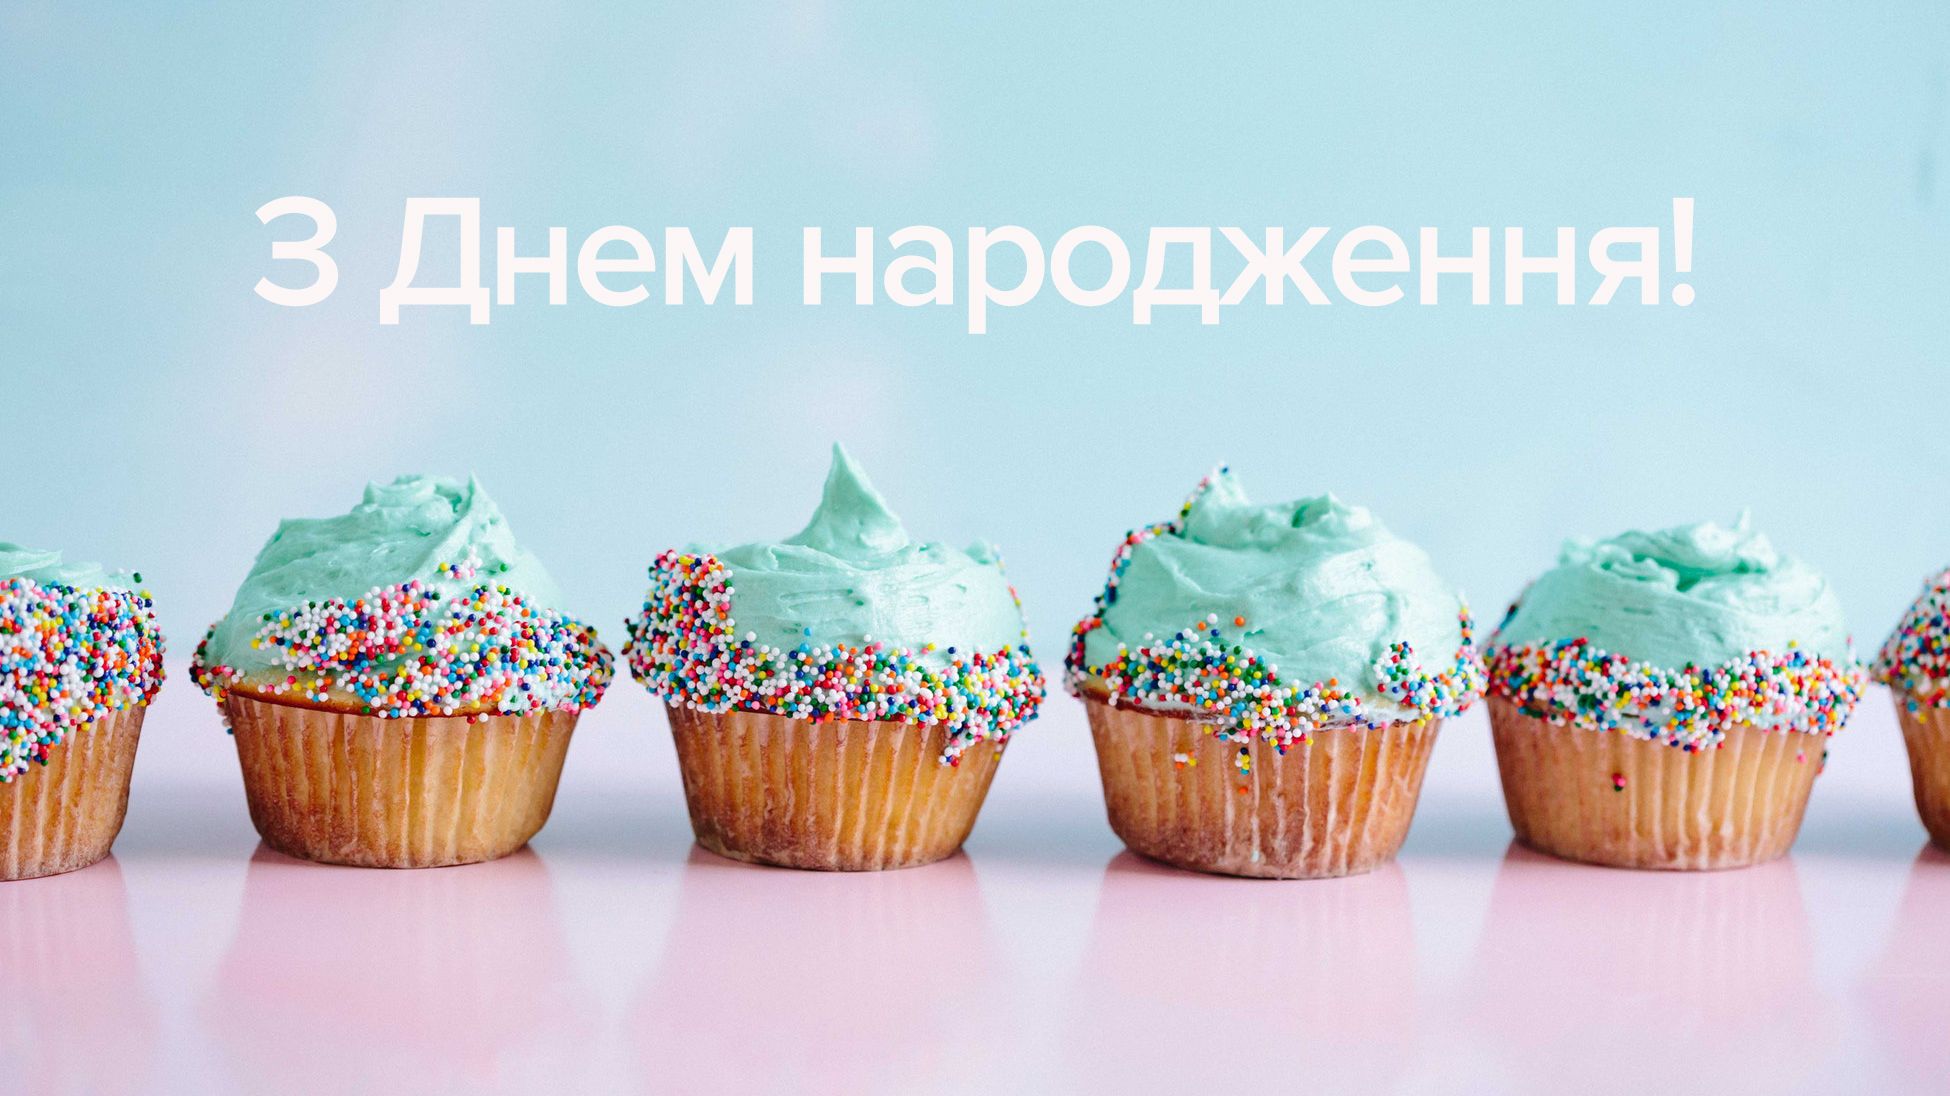 Привітати бухгалтера з днем народження українською мовою
